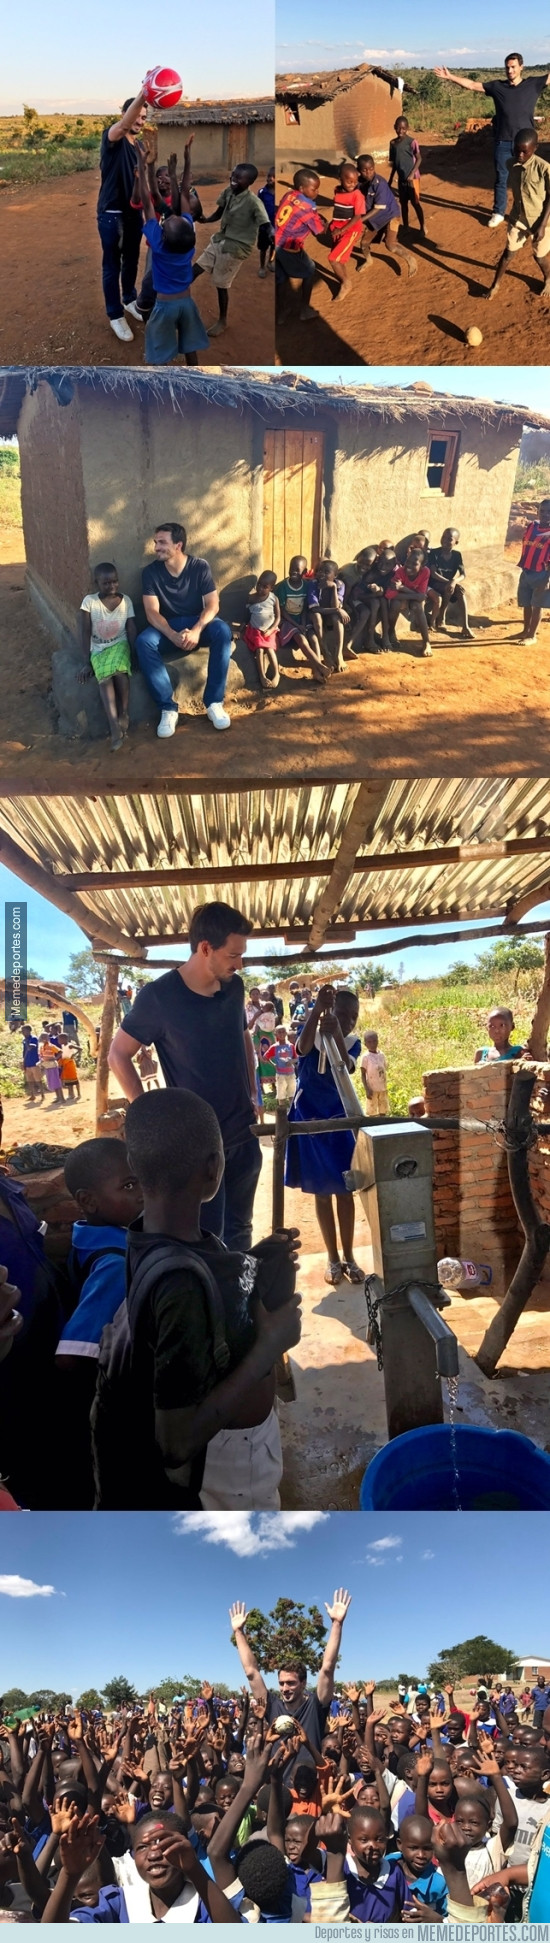 977583 - Hummels visita una aldea Africana en Malawi solo 2 días después de salir campeón en Alemania